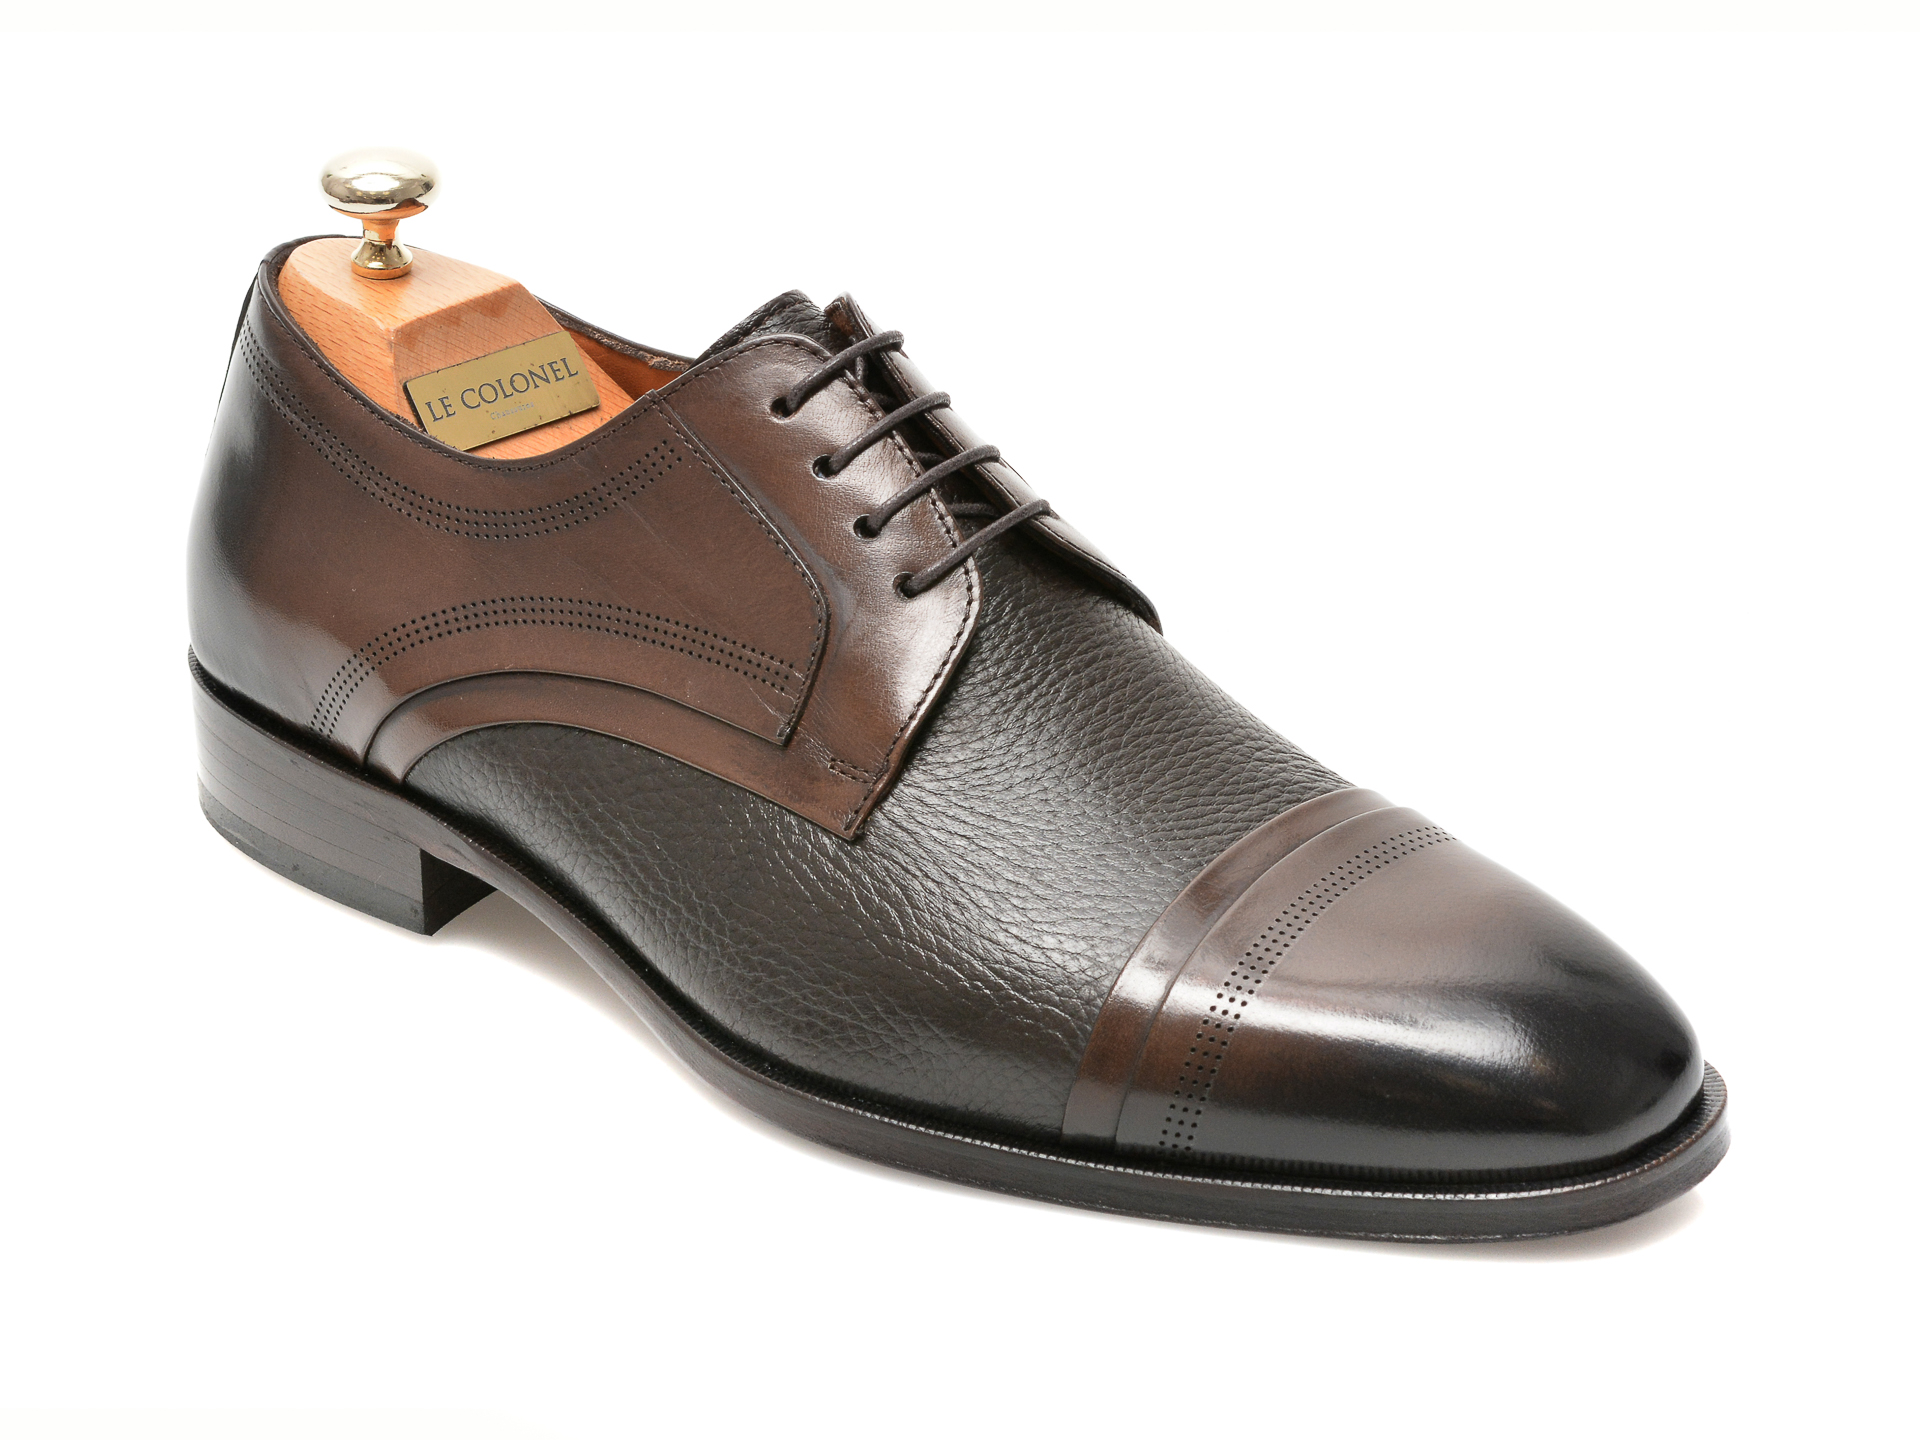 Pantofi LE COLONEL maro, 48470, din piele naturala Le Colonel imagine 2022 13clothing.ro